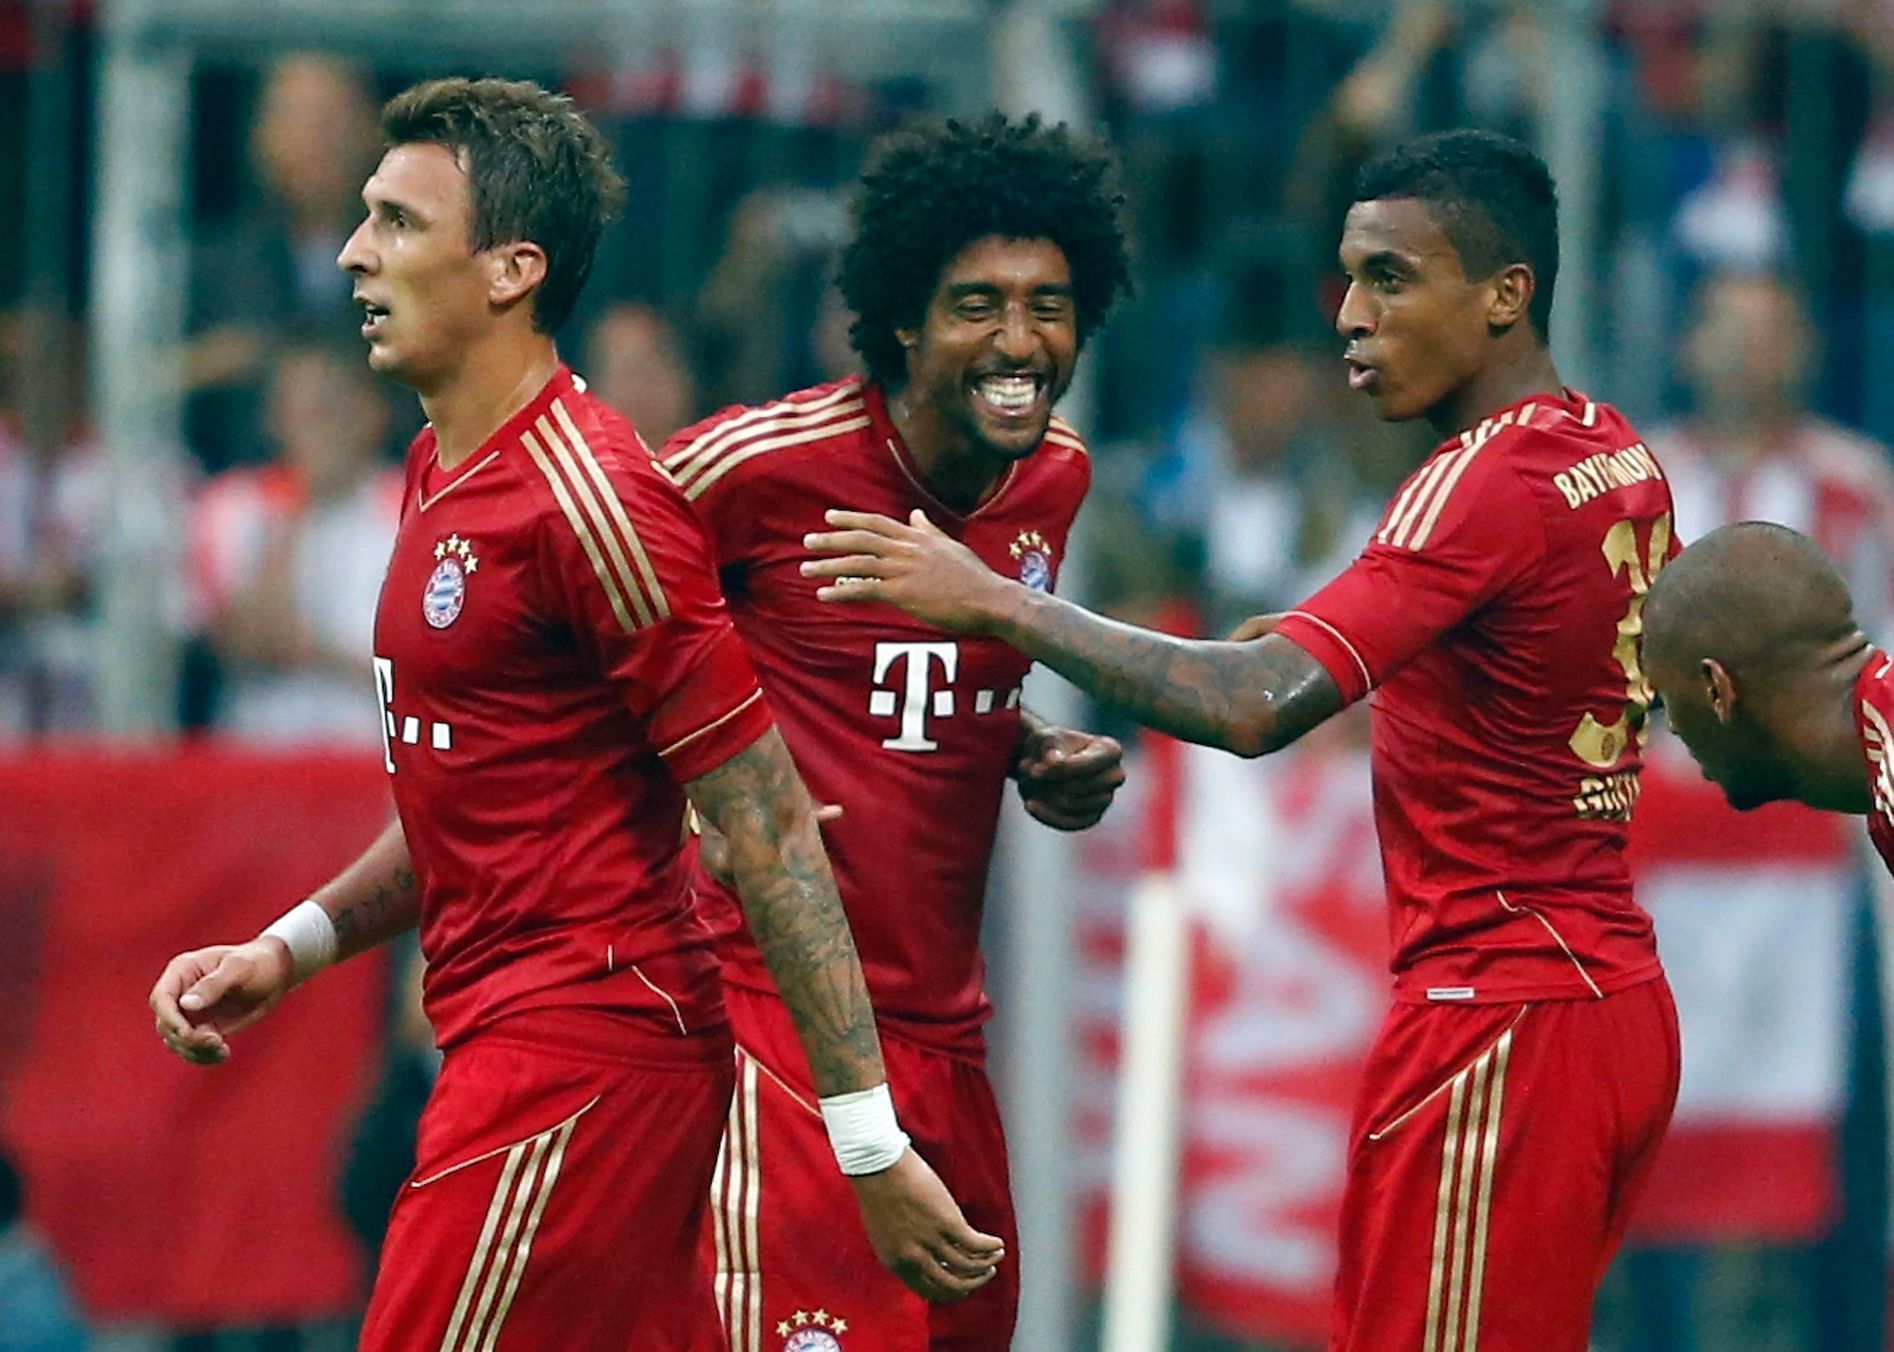 Hráči Bayernu Mnichov Mandžukič, Dante a Gustavo slaví gól do sítě Stuttgartu